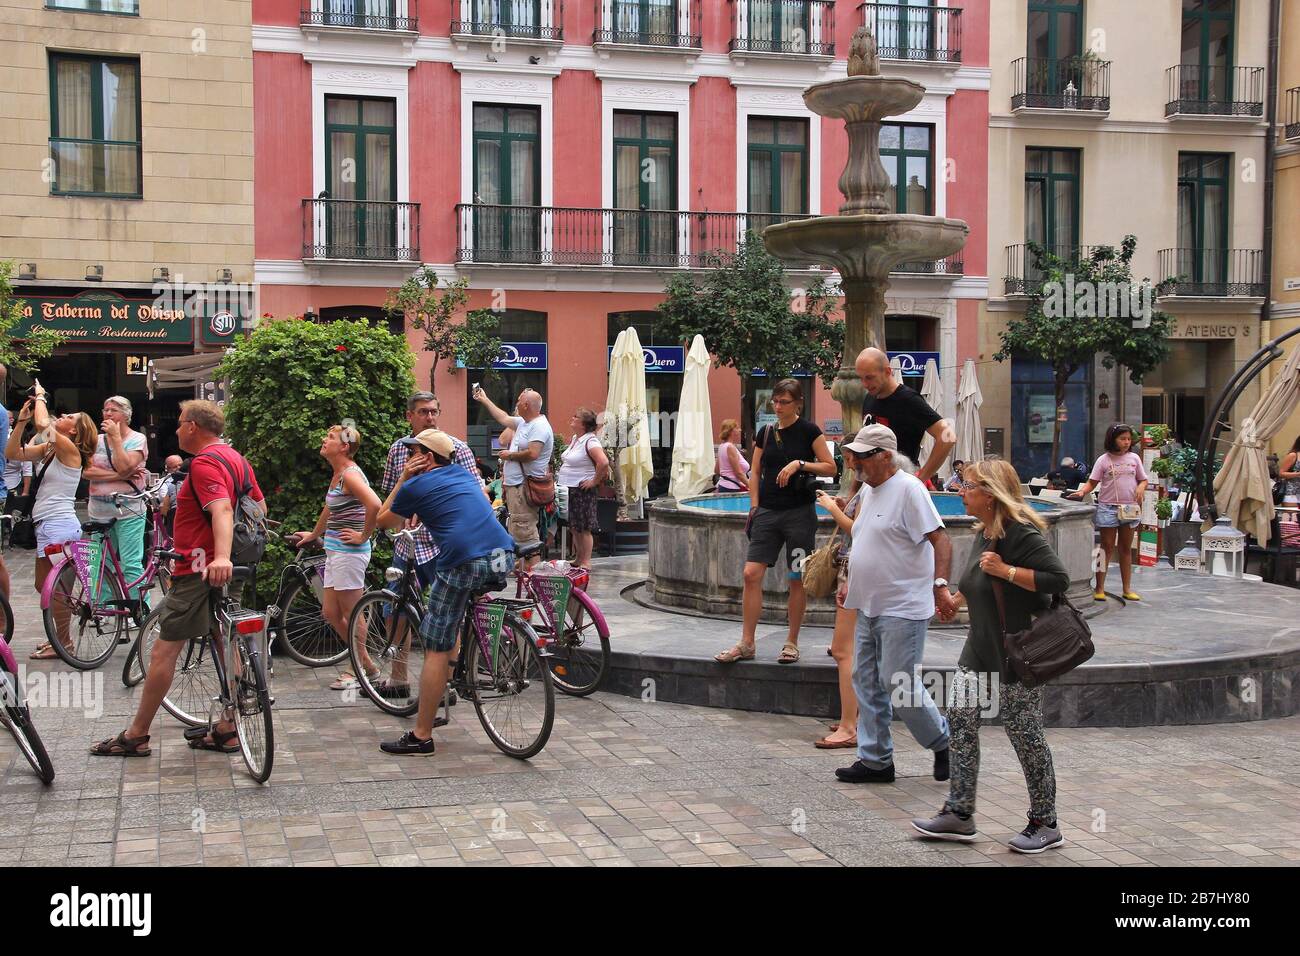 MALAGA, SPANIEN - OKTOBER 4, 2014: die Menschen besuchen Sie die Altstadt von Malaga, Spanien. Laut UNWTO Spanien wurde von 68,2 Millionen Touristen im Jahr 2015 besucht. Stockfoto